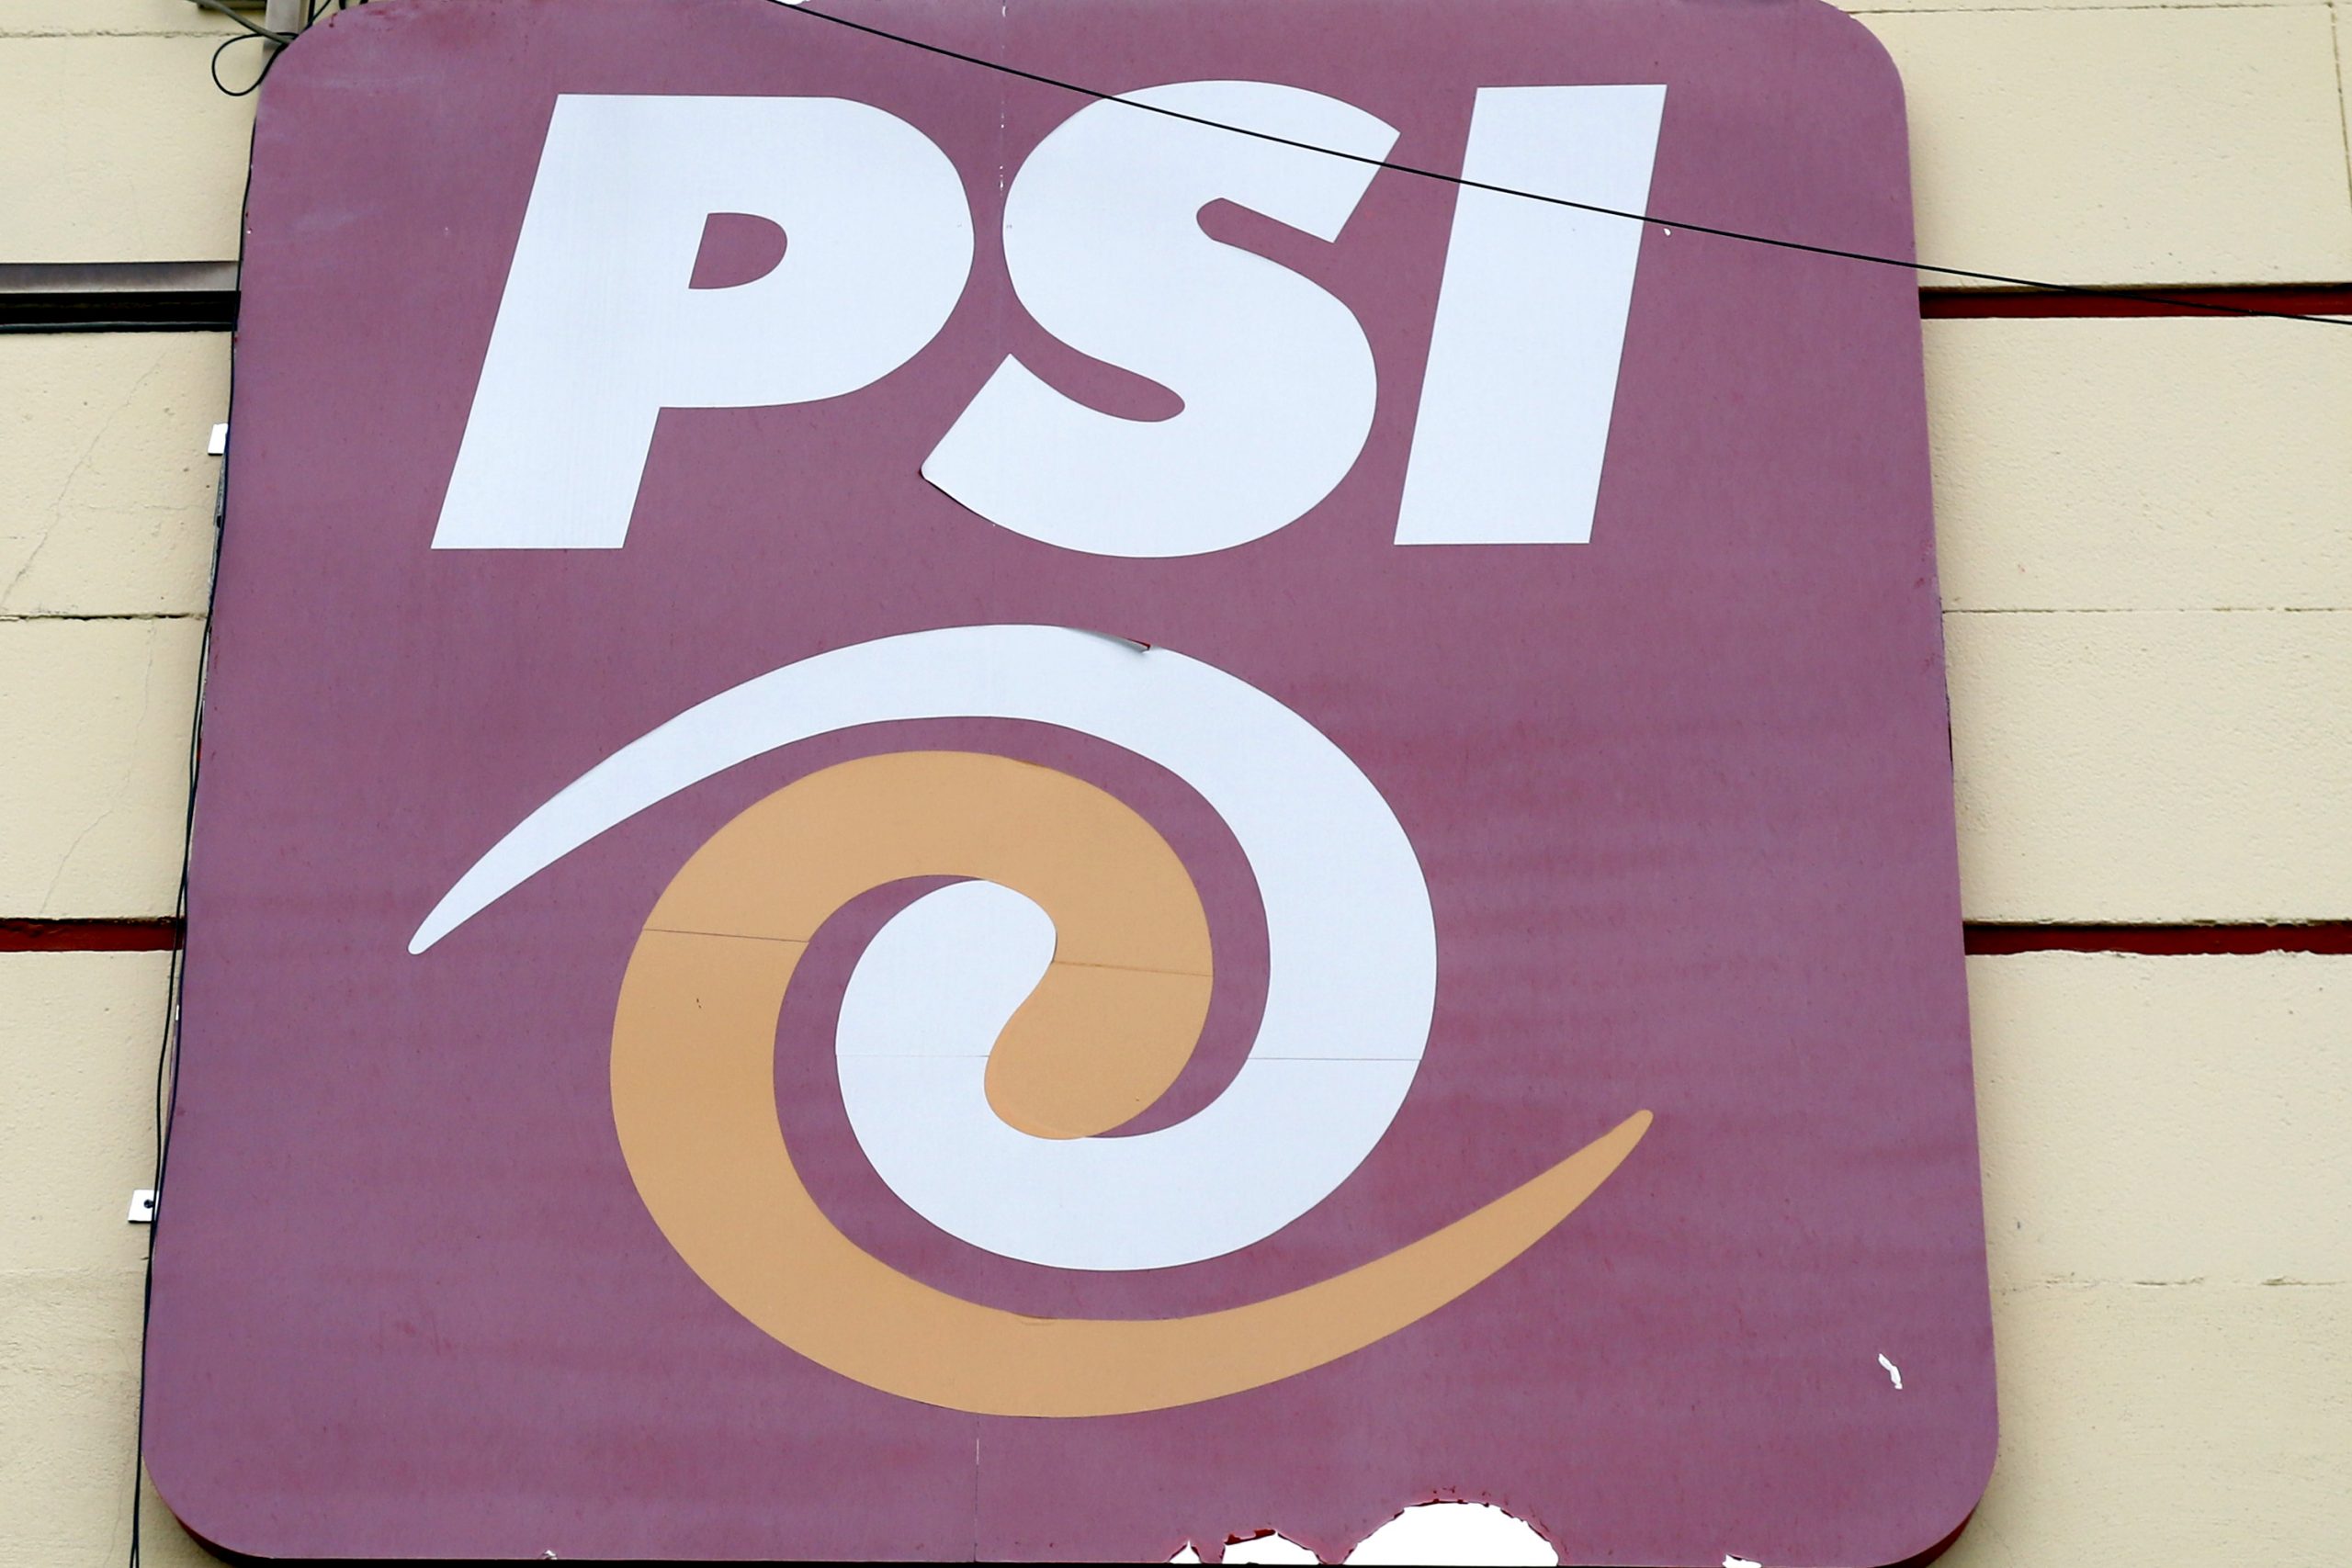 Candidaturas de PSI, perfiles que la delincuencia manchó